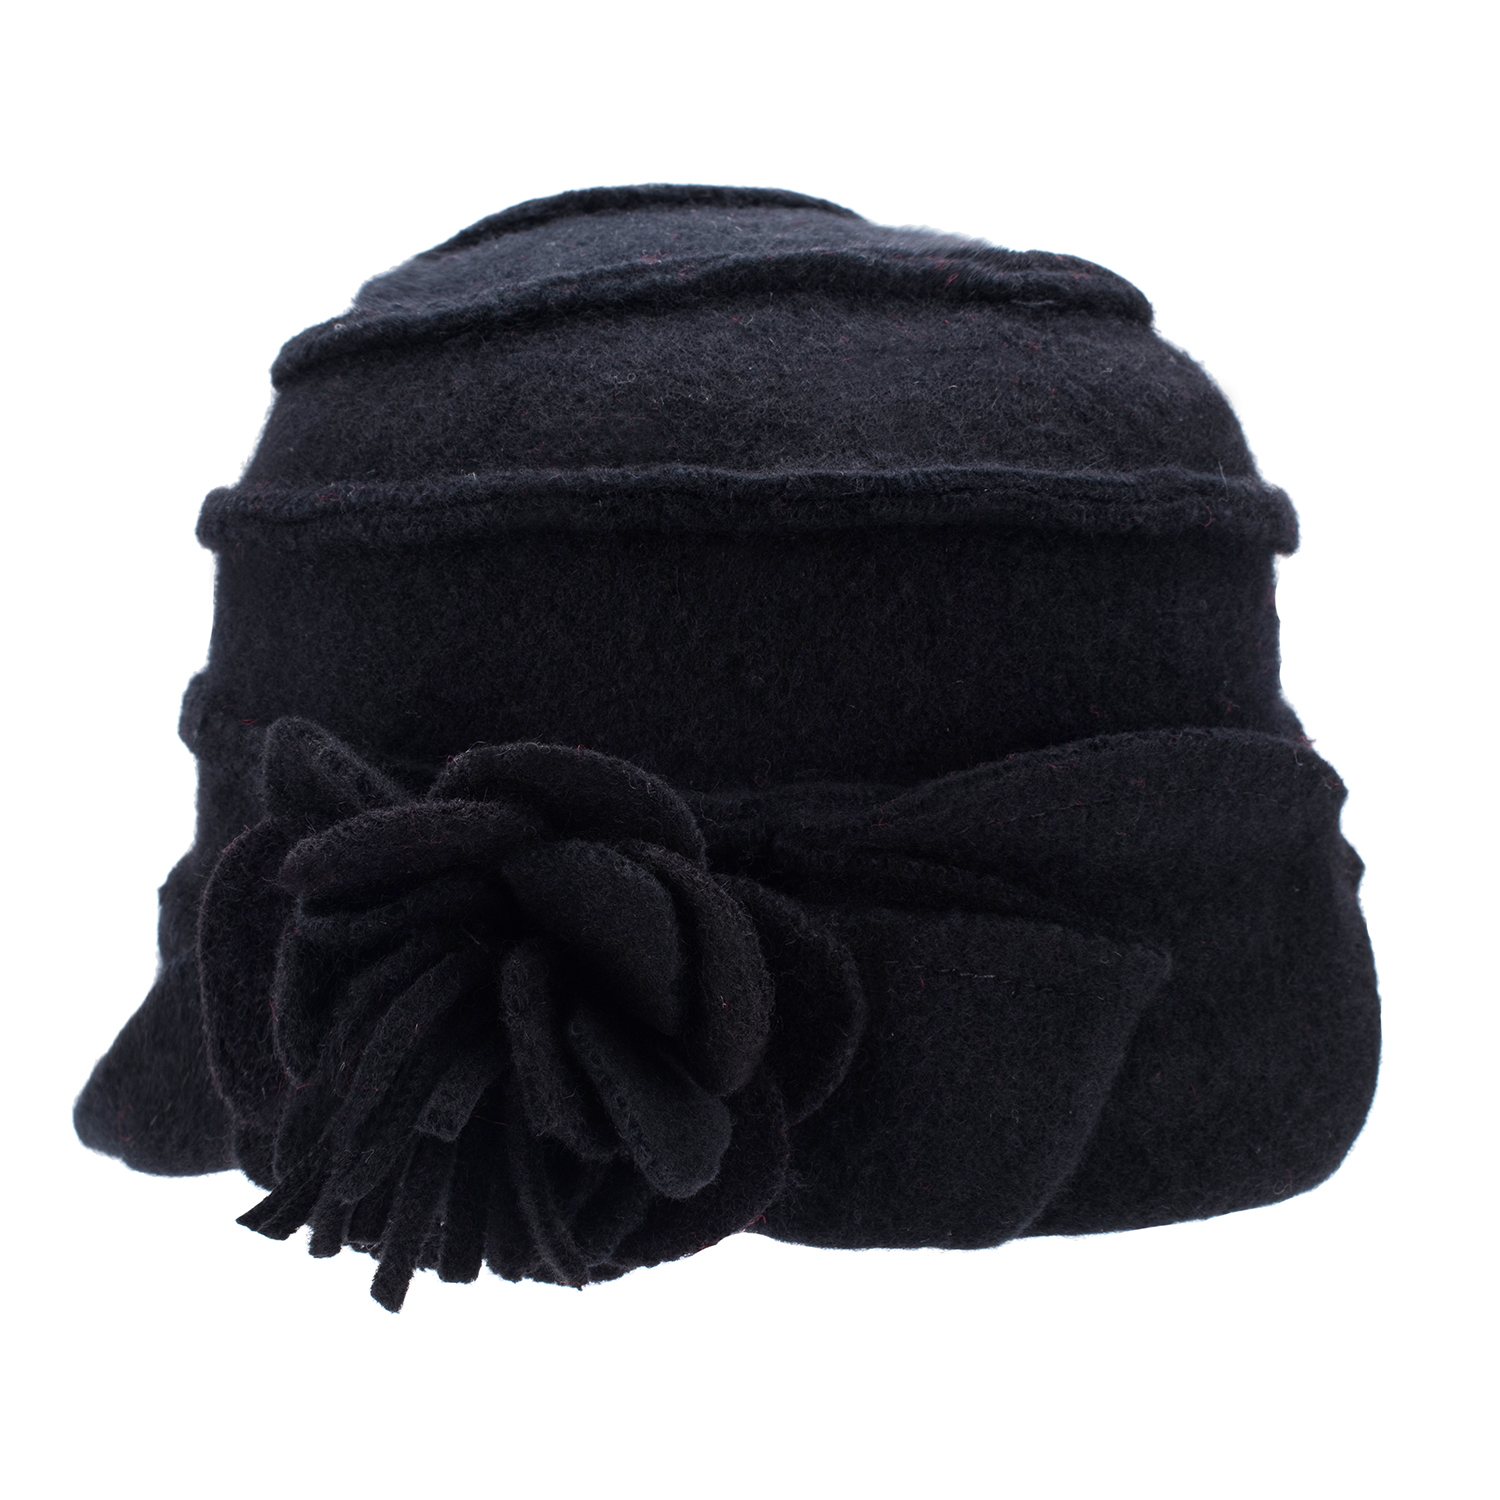 우아한 1920 년대 스타일의 숙녀 모자 겨울 베레 비니 모자 여성용 버킷 클로체 모자 100% 삶은 양모 따뜻한 모자 A376